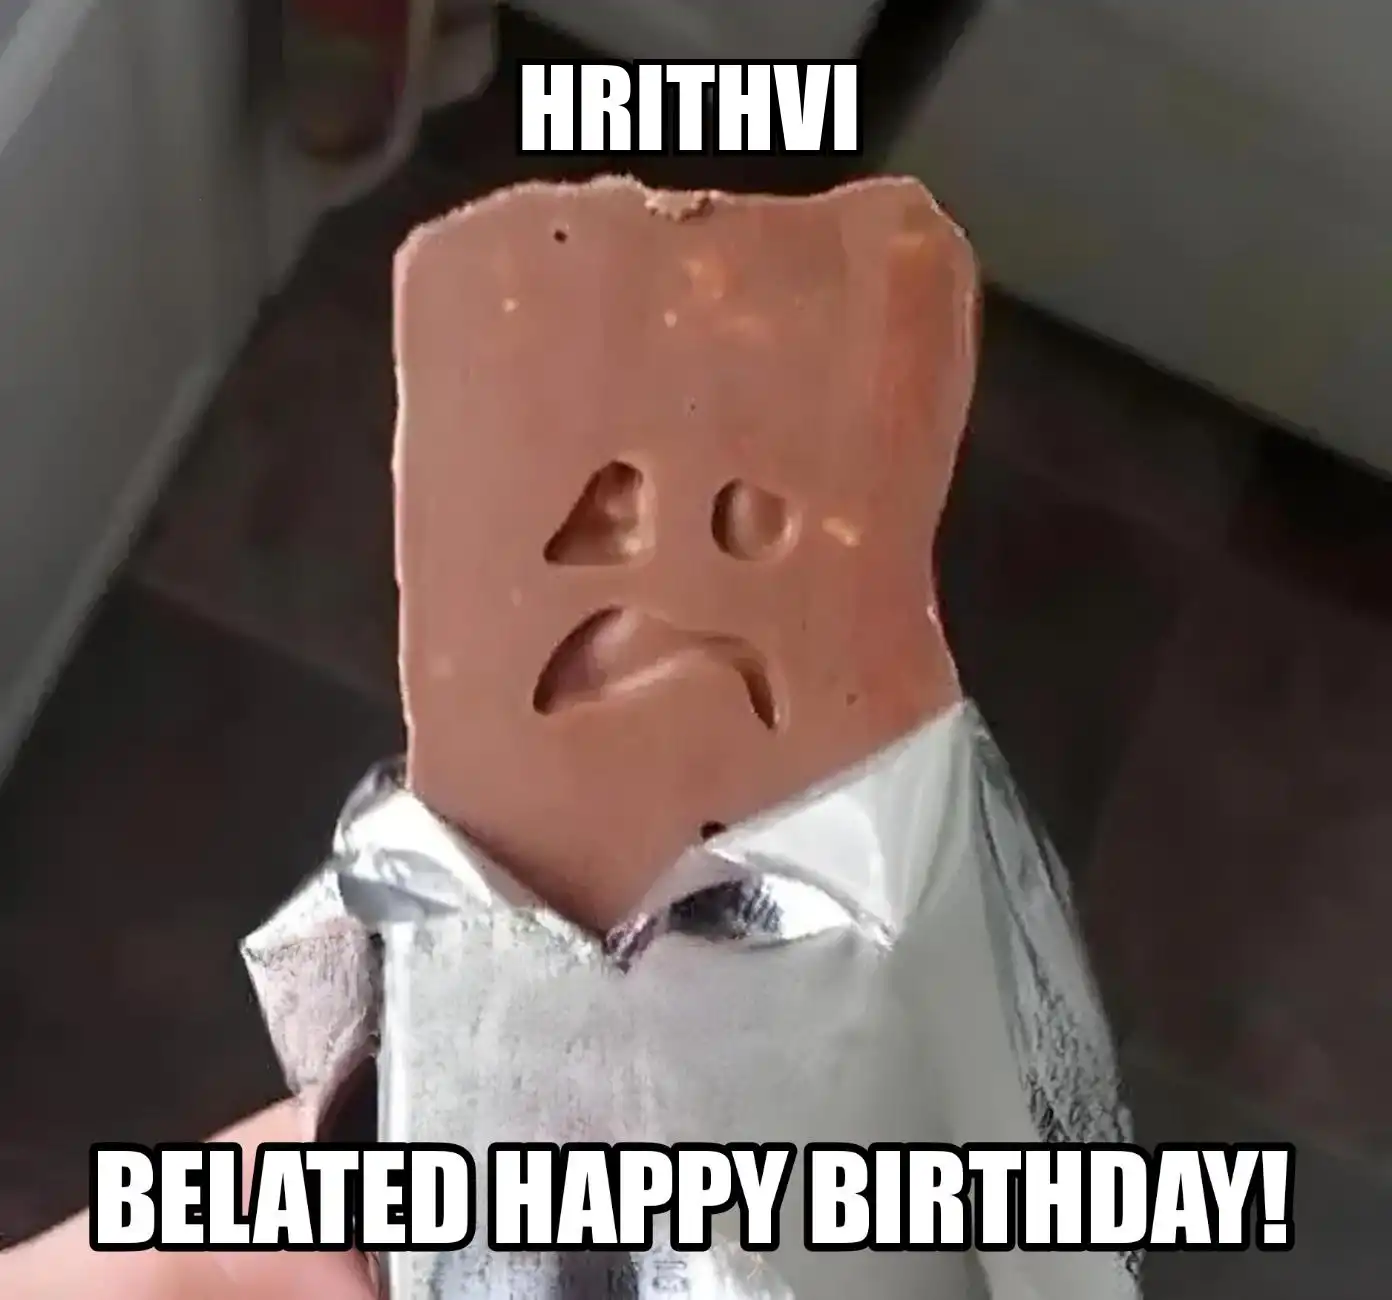 Happy Birthday Hrithvi Belated Happy Birthday Meme